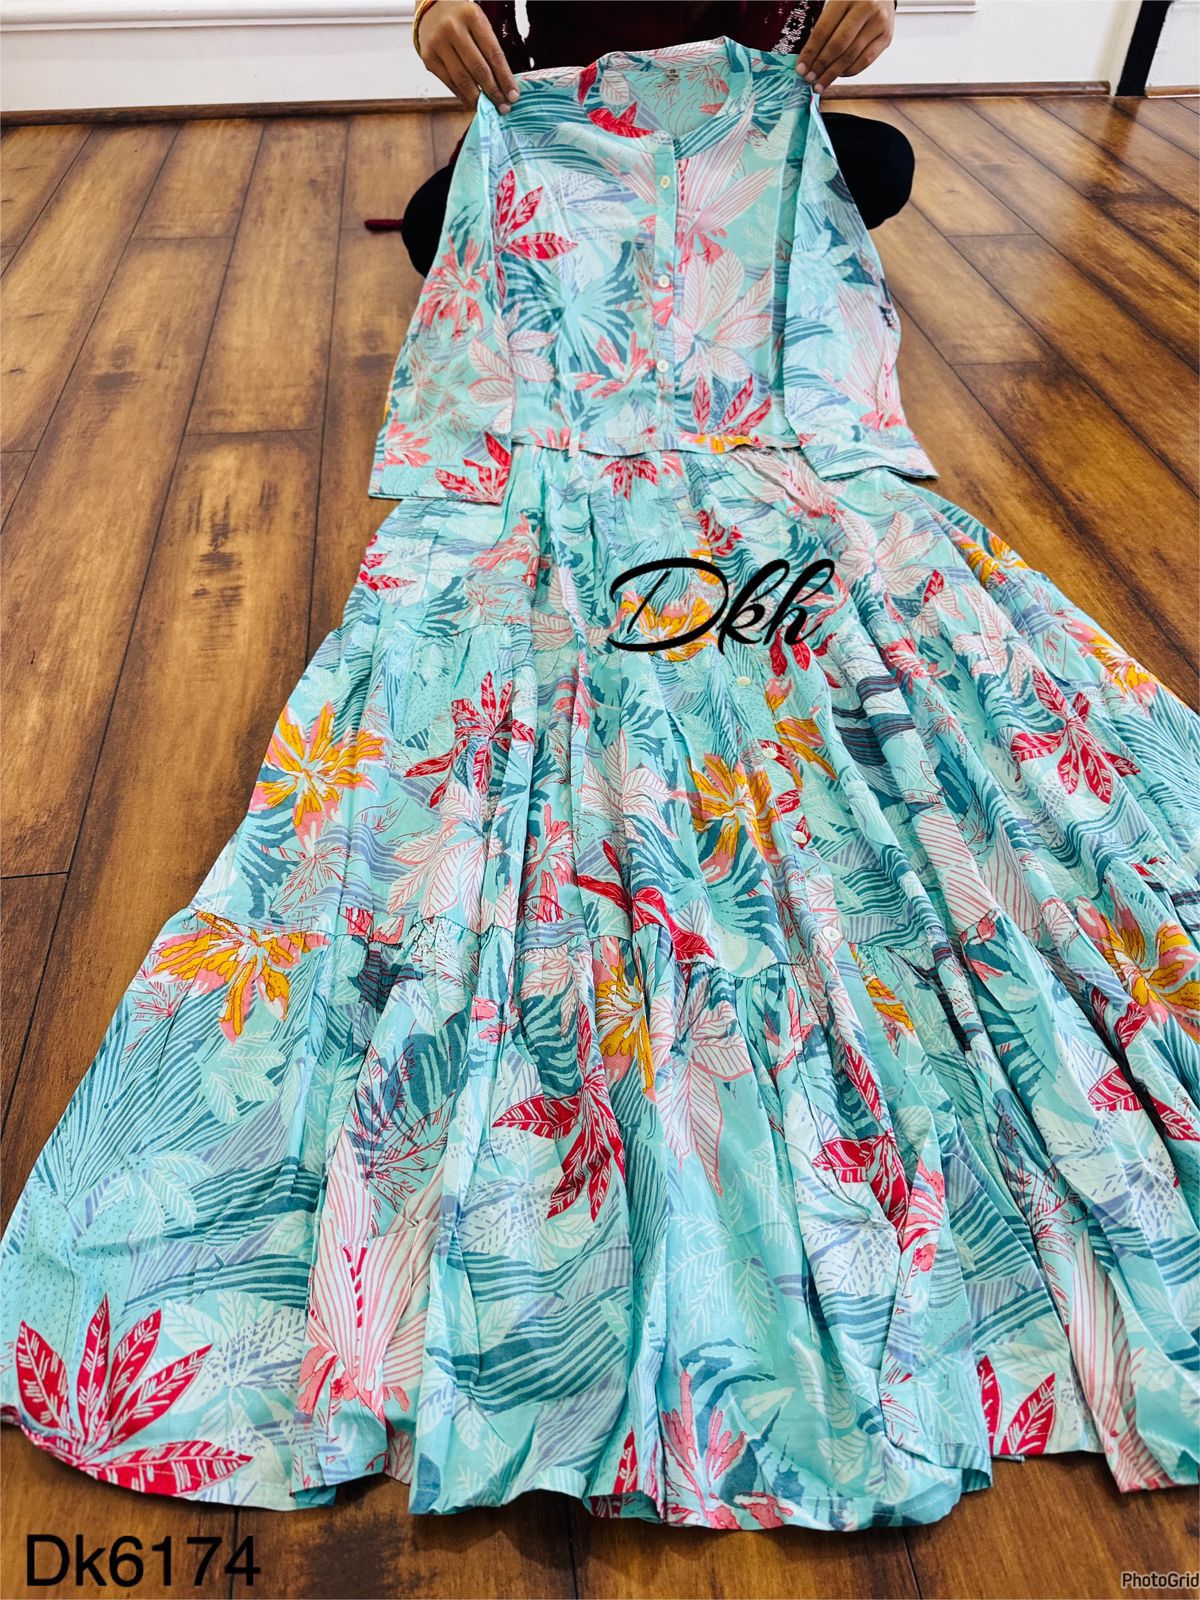 Premium Russian silk beautifully printed gown Dk6174